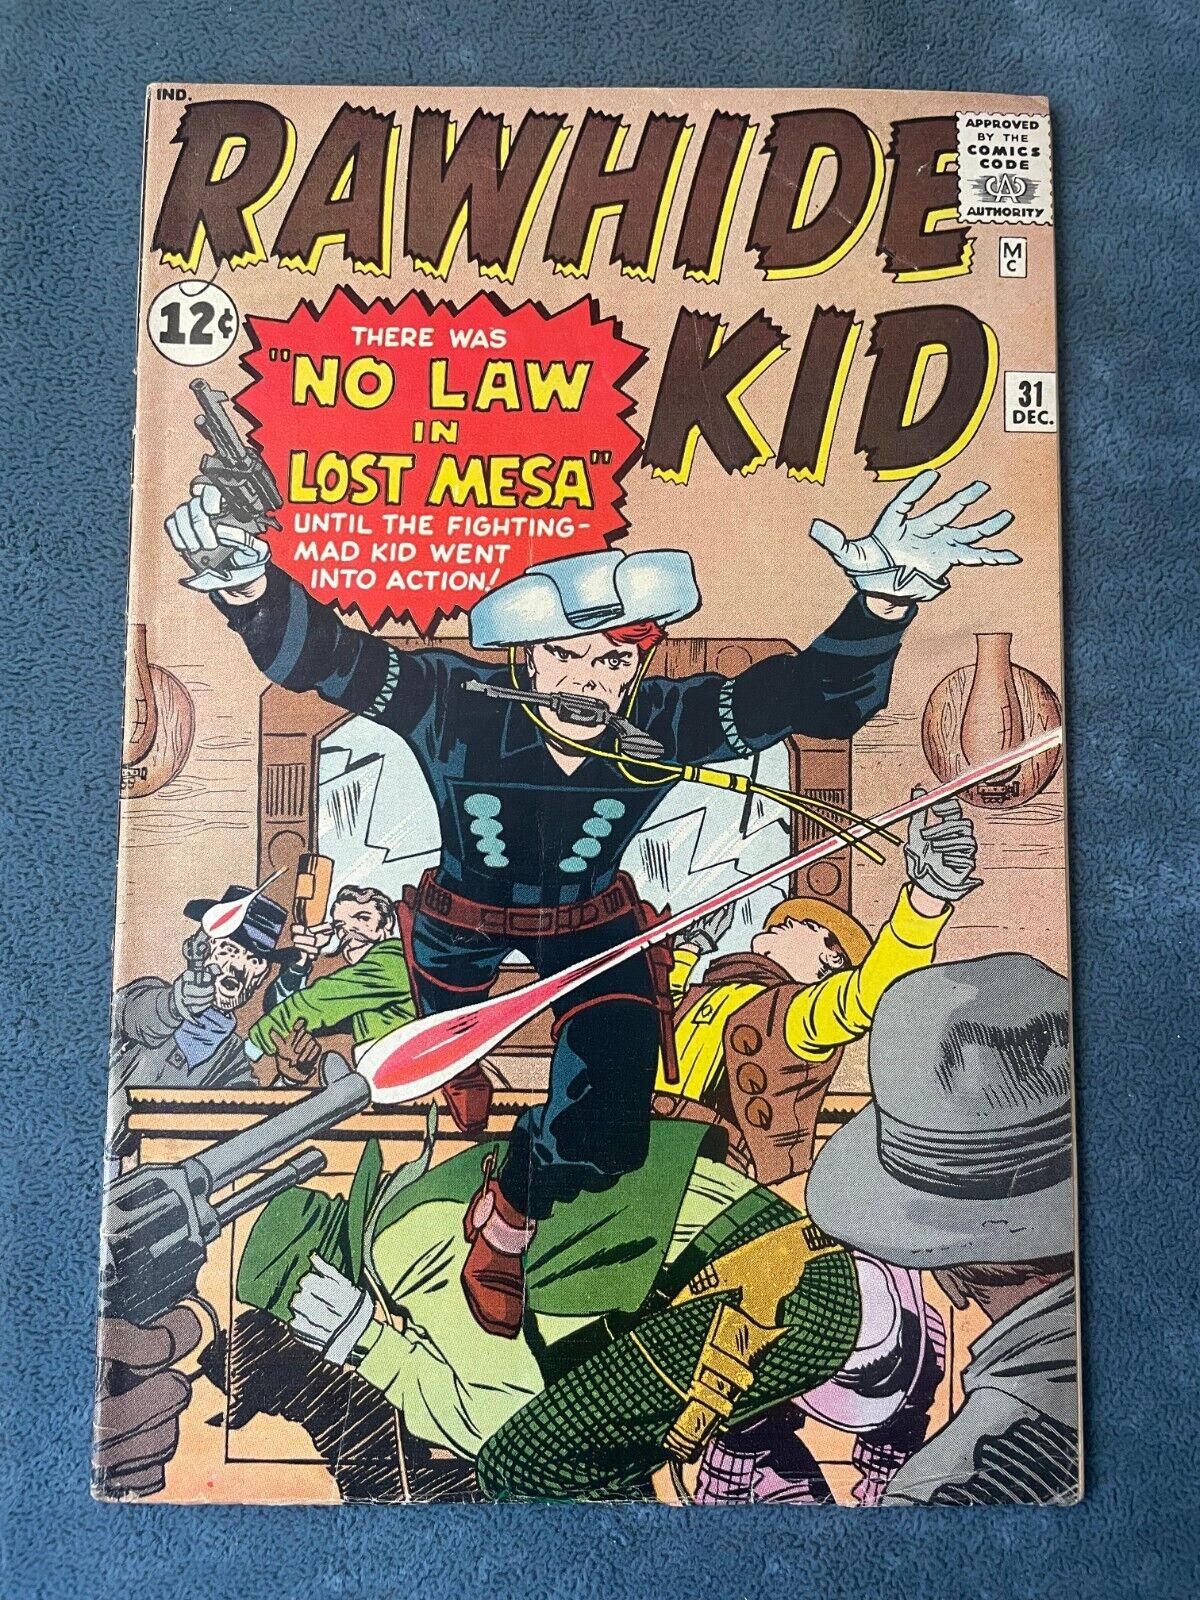 Rawhide Kid #31 1962 Atlas Marvel Comic Book Silver Age Western Jack Kirby FN-